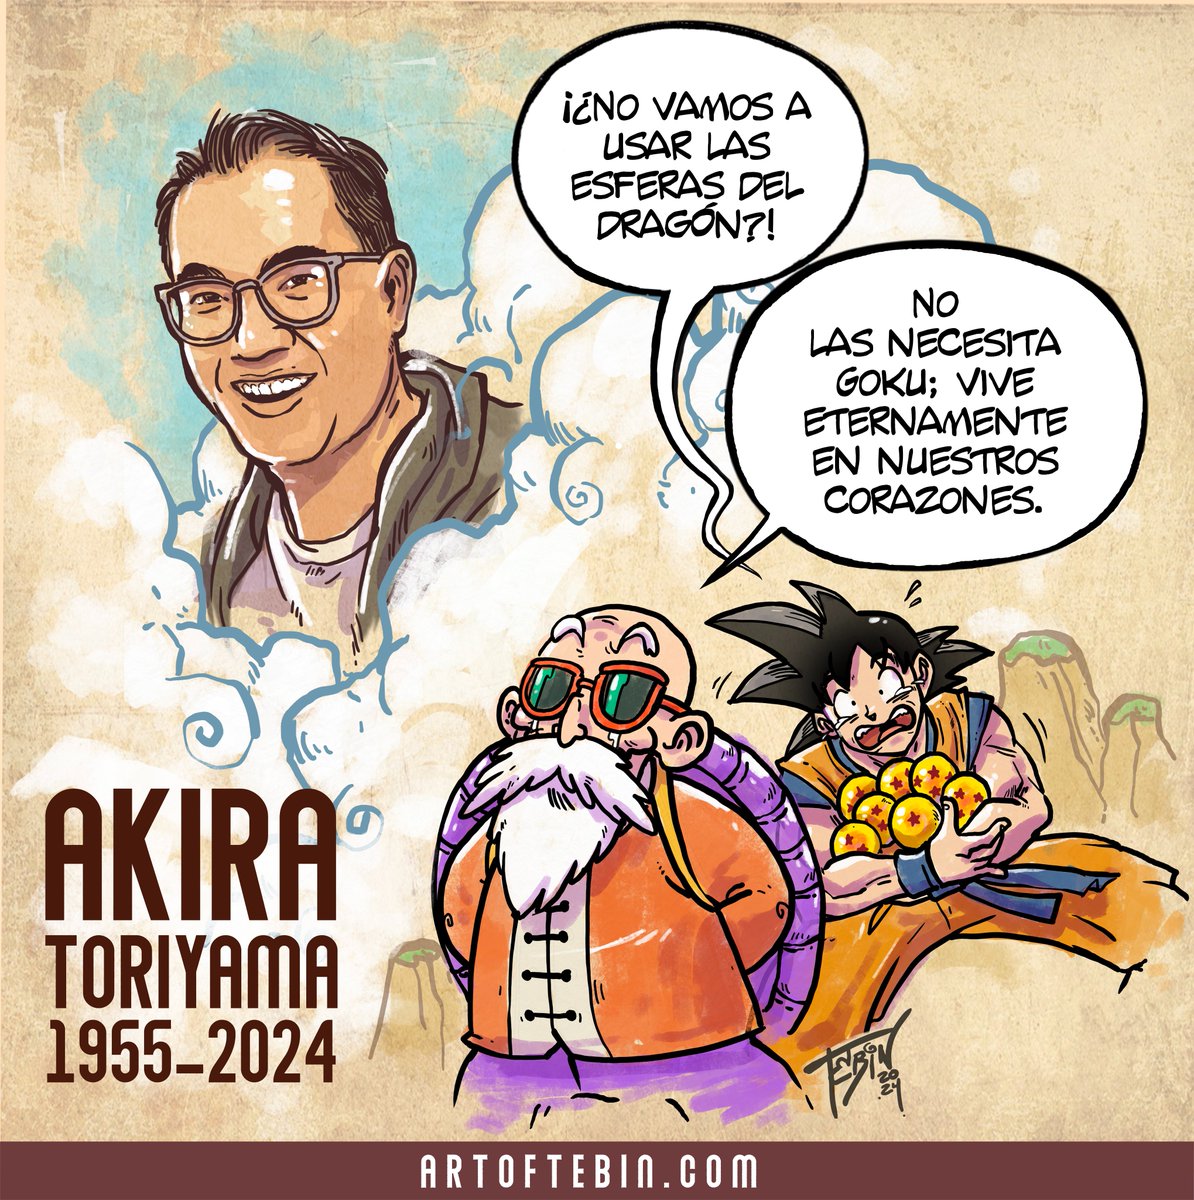 -¡¿No vamos a usar las esferas del dragón?! 
-No las necesita; vive eternamente en nuestros corazones.
Un pequeño homenaje para Akira Toriyama.
Descanse en paz.
#DragonBall #AkiraToriyama #akiratoriyamarip #dbz #toriyamaakira #RIPAkiraToriyama #goku #akira_toriyama #dragonquest